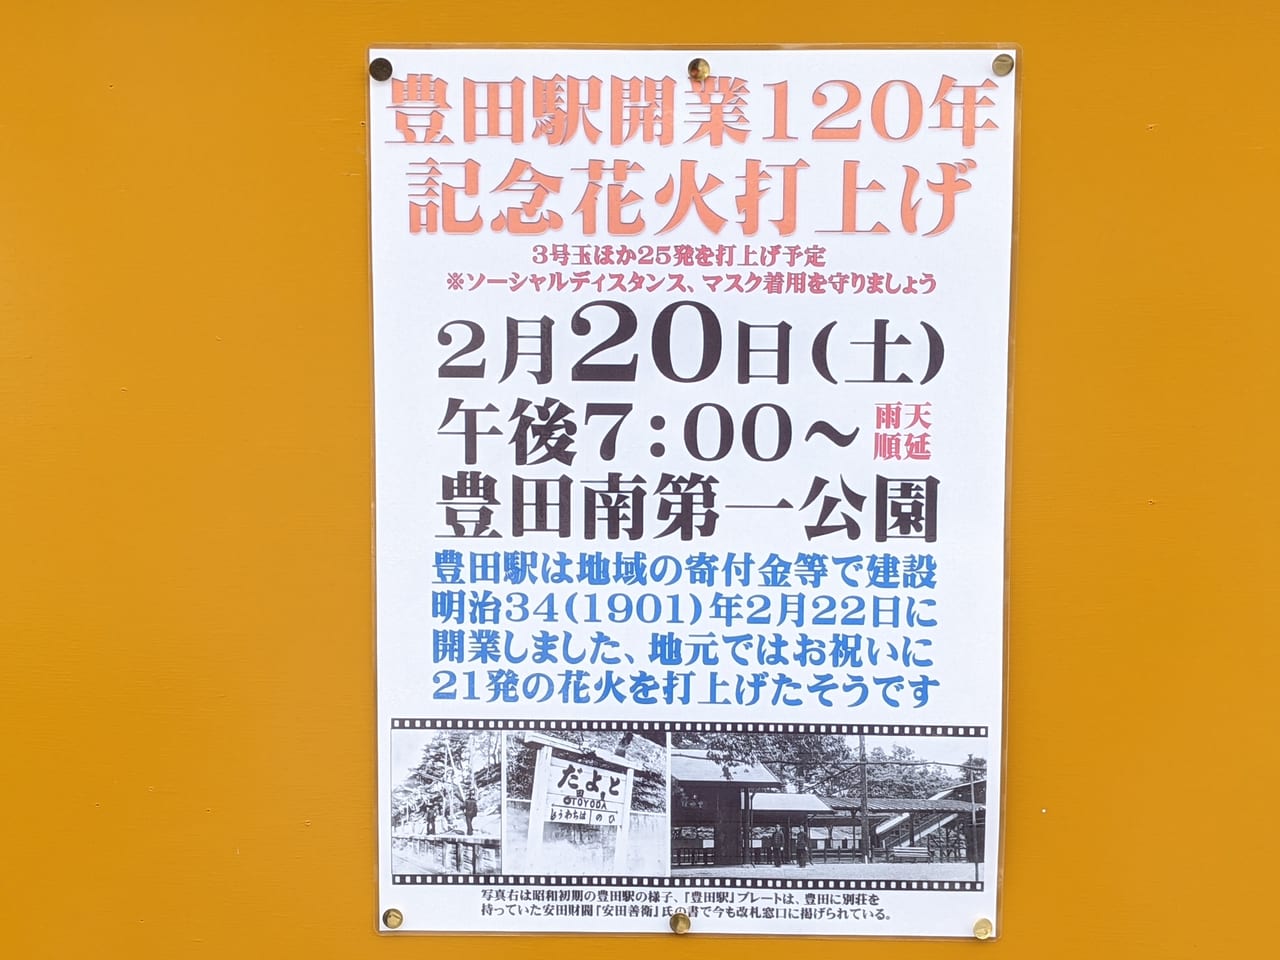 豊田駅開業120年記念花火